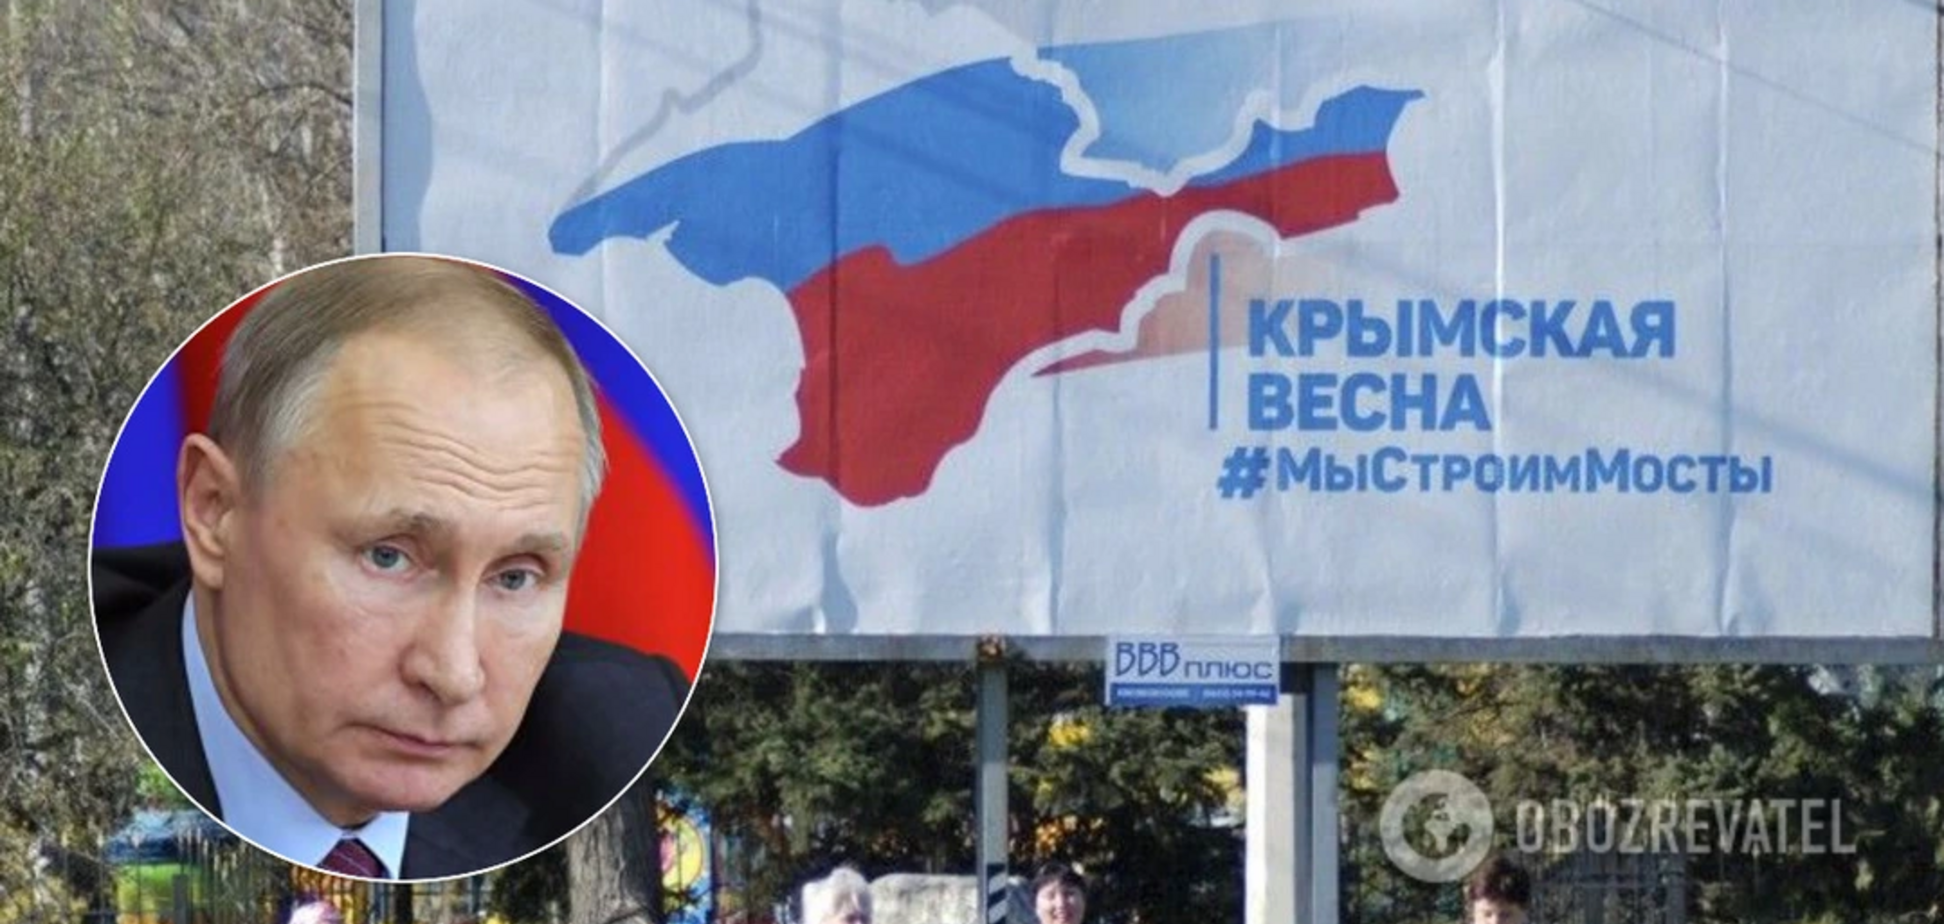 Володимир Путін заявив, що Крим завжди був російським